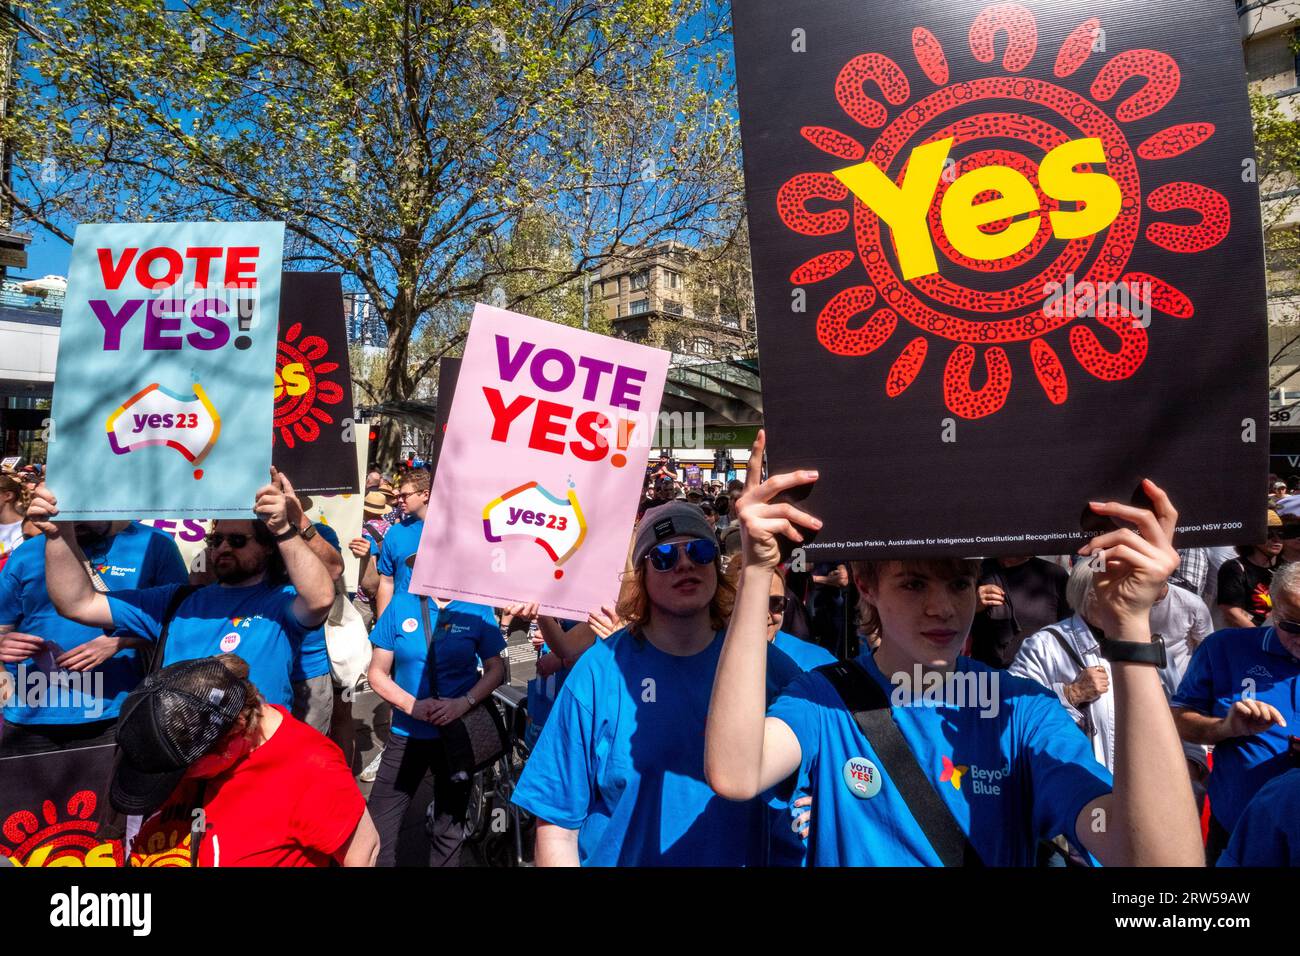 Les manifestants soutiennent la campagne du Oui lors du référendum australien reconnaissant les Australiens indigènes dans la constitution. Melbourne, Victoria, Australie Banque D'Images